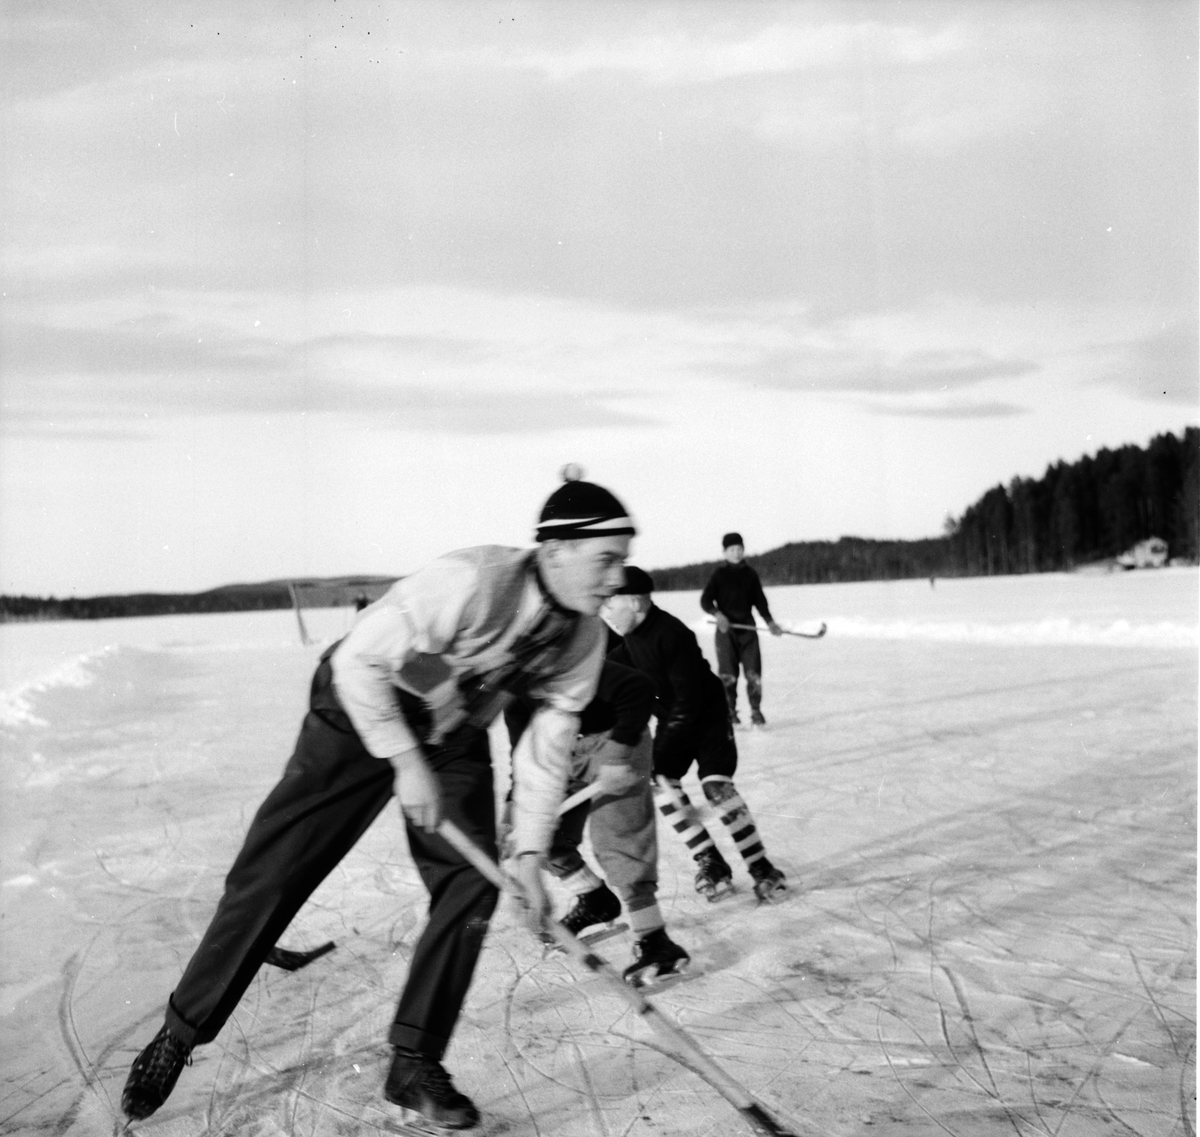 Skolbarn, affären, skogskörare i Skräddrabo.
18/1 1957